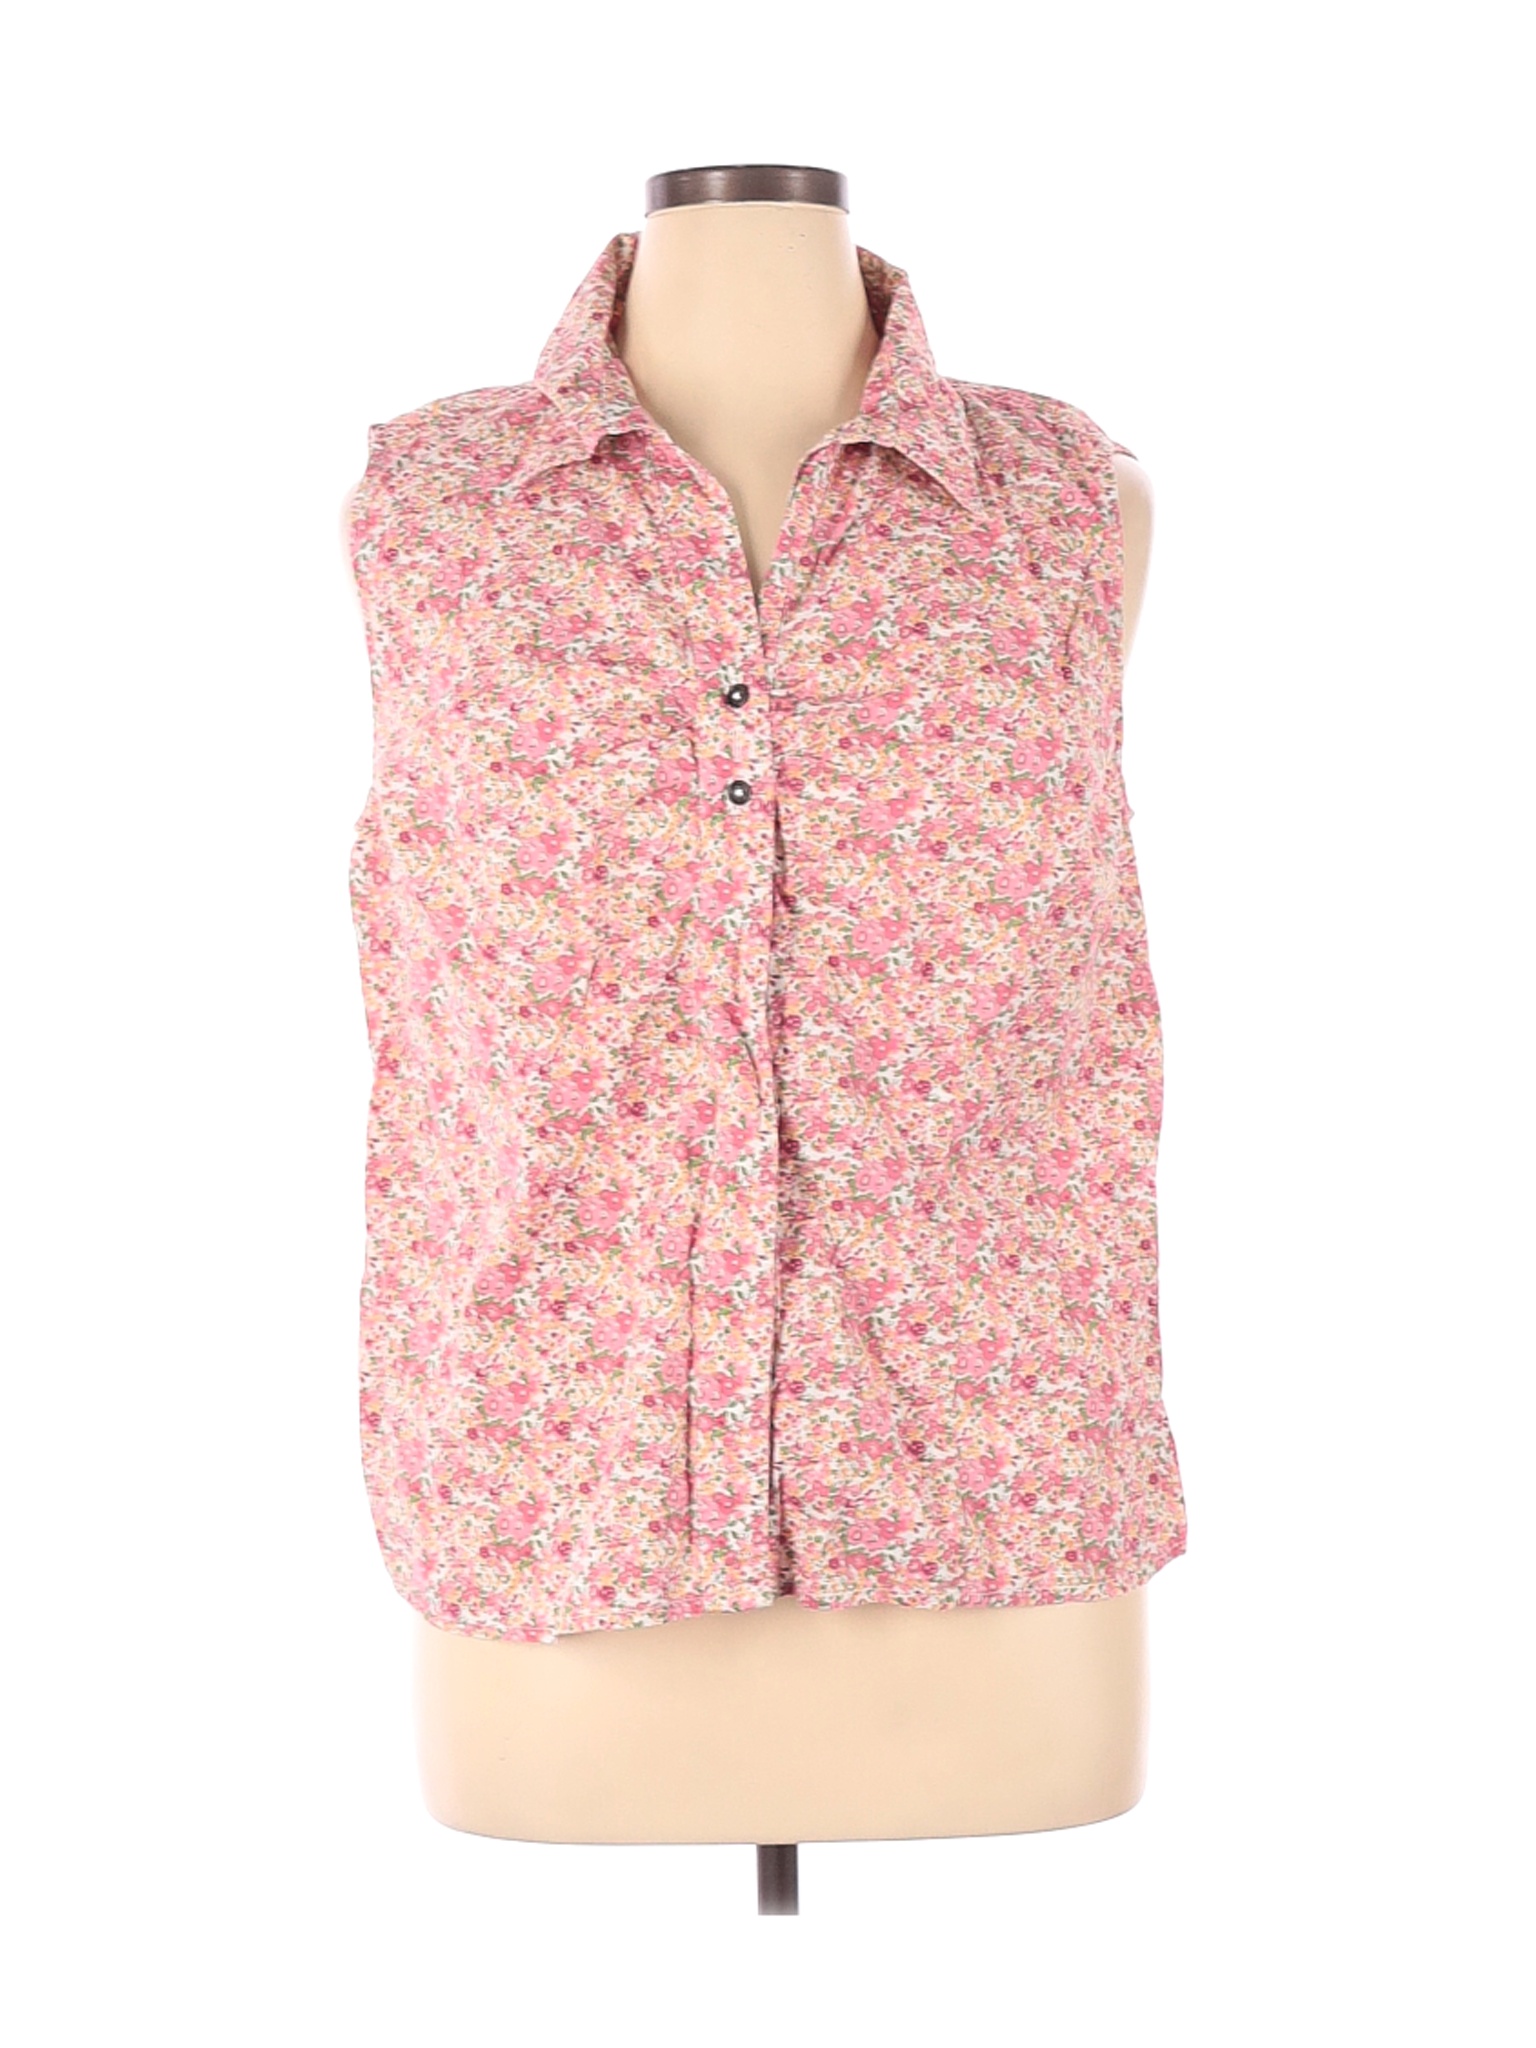 Bit & Bridle Women Pink Sleeveless Button-Down Shirt XL | eBay